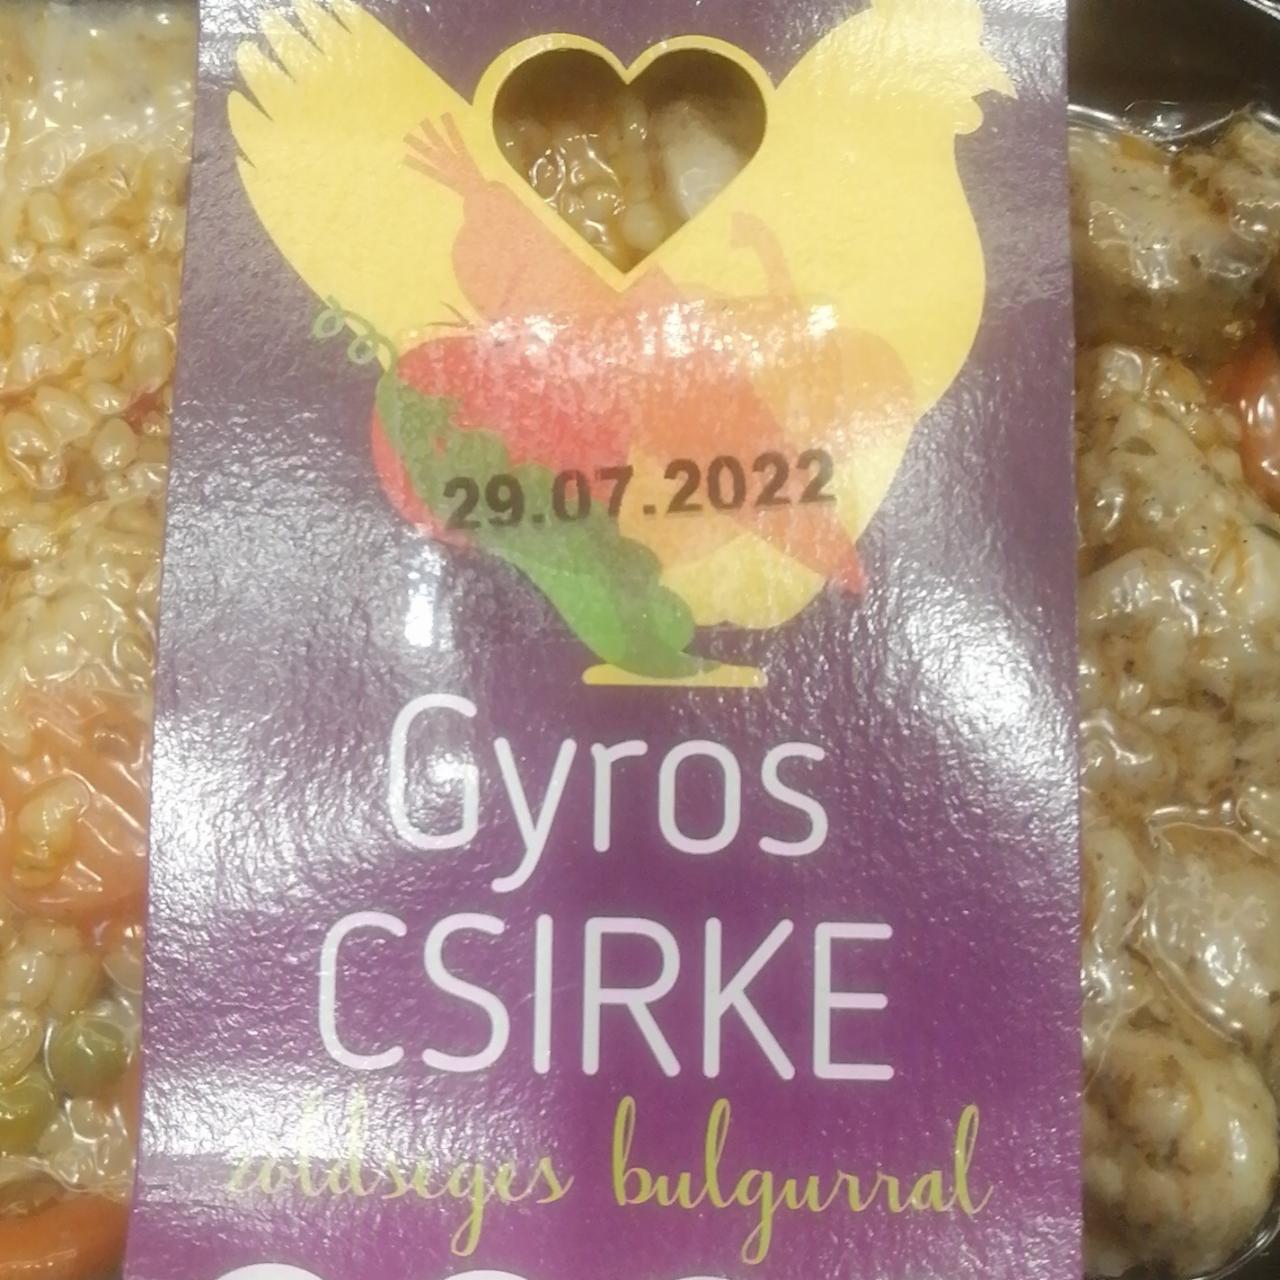 Fotografie - Gyros csirke zöldséges bulgurral Foodbox